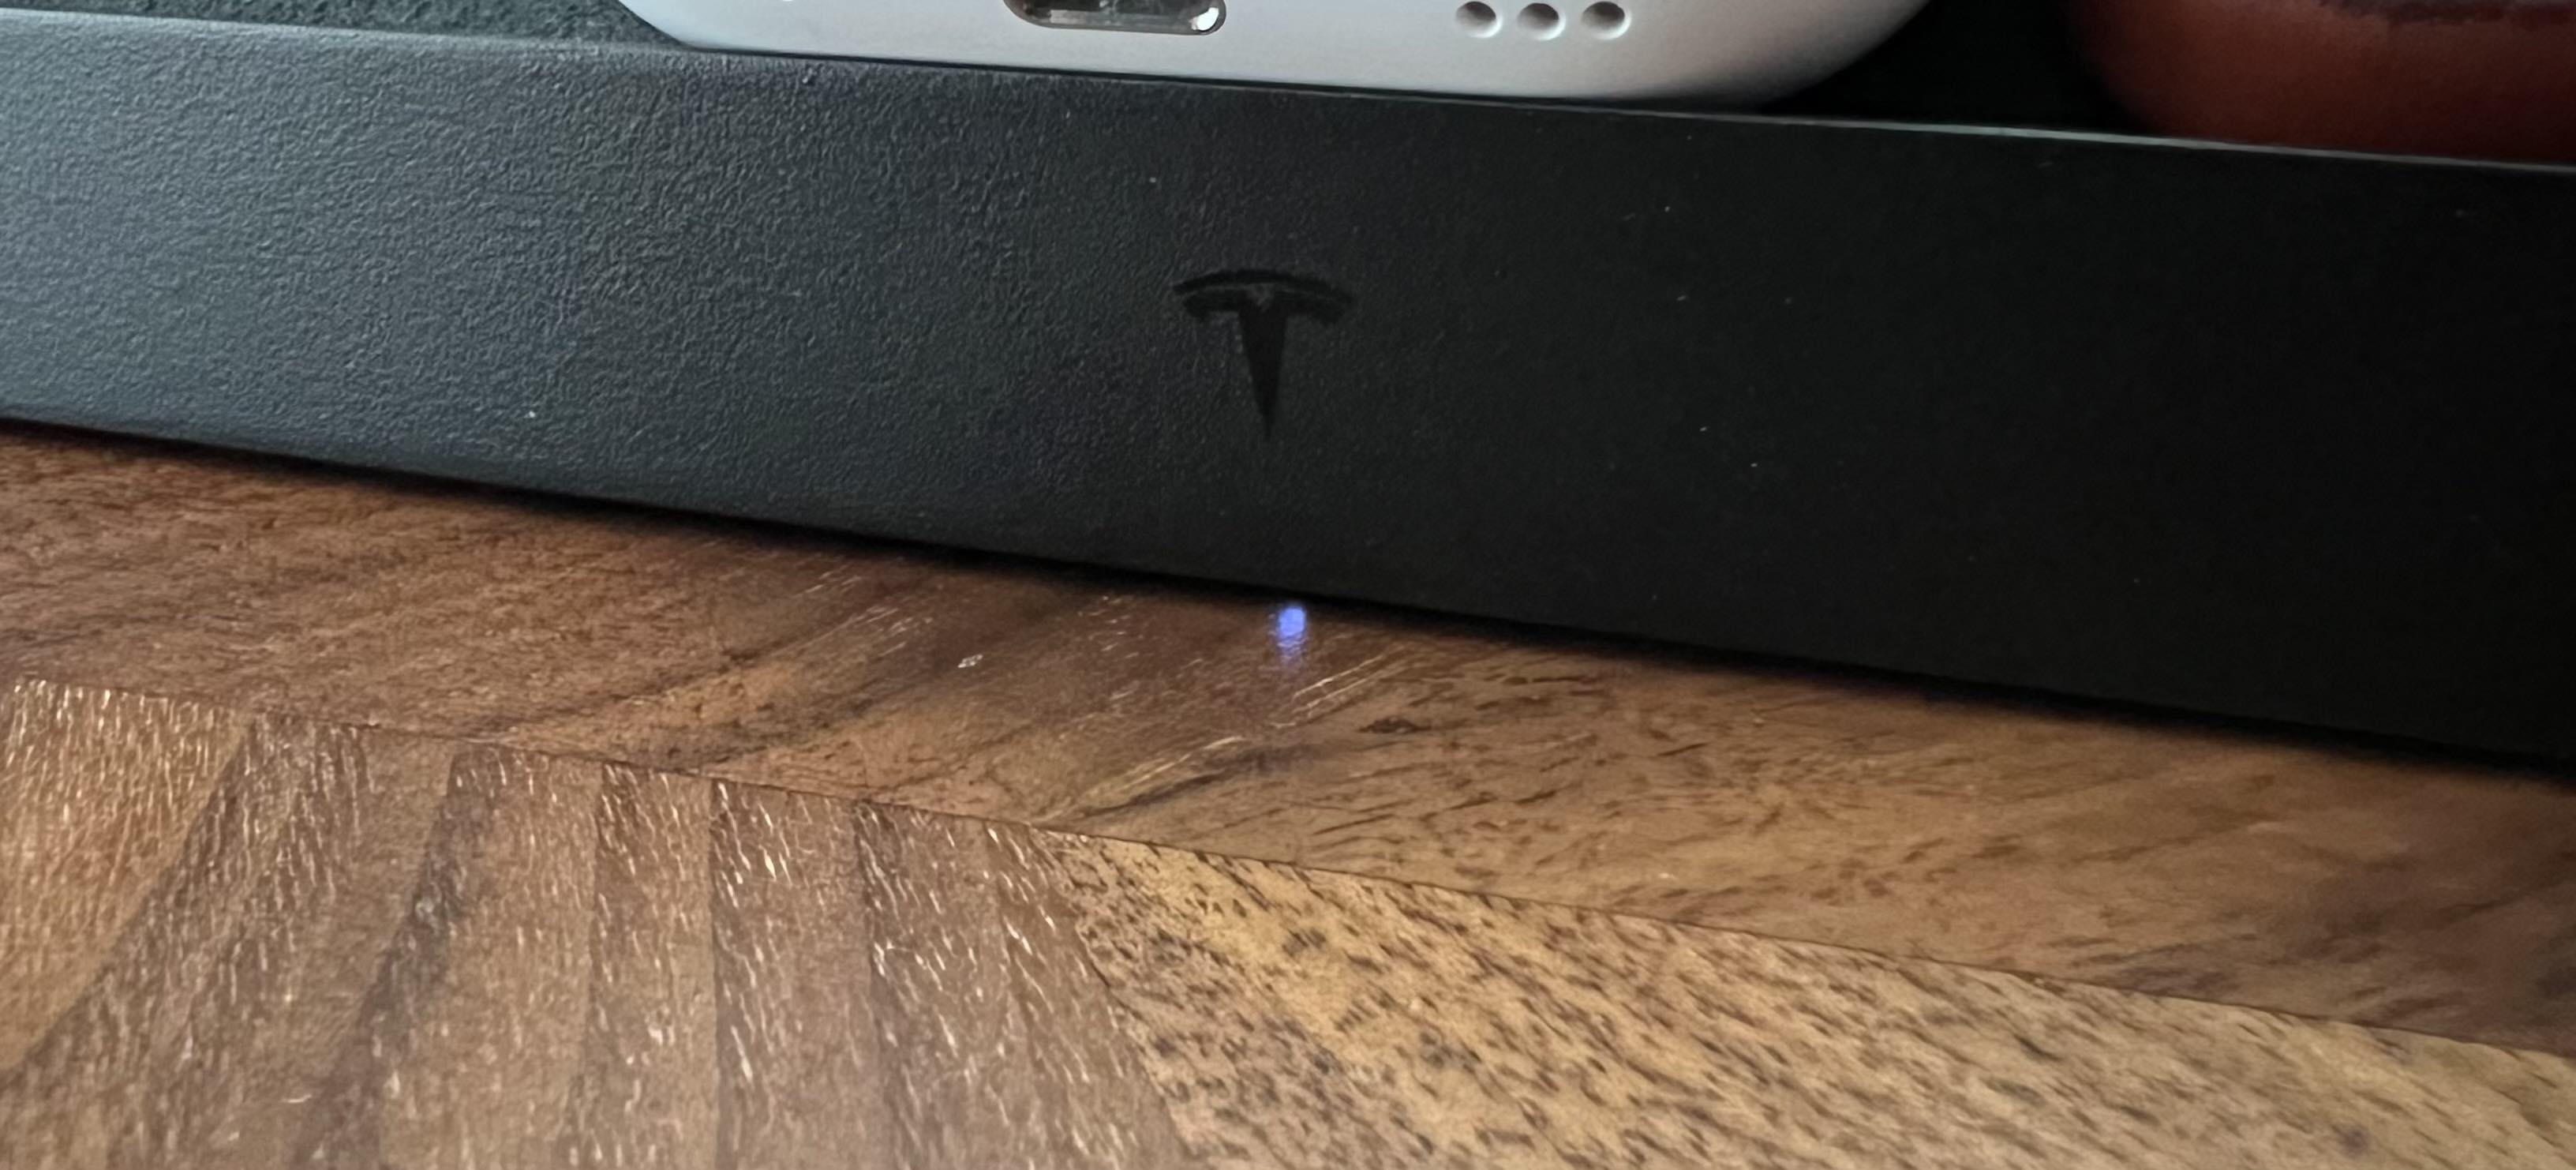 Tesla Wireless Charging Platform LED indicator